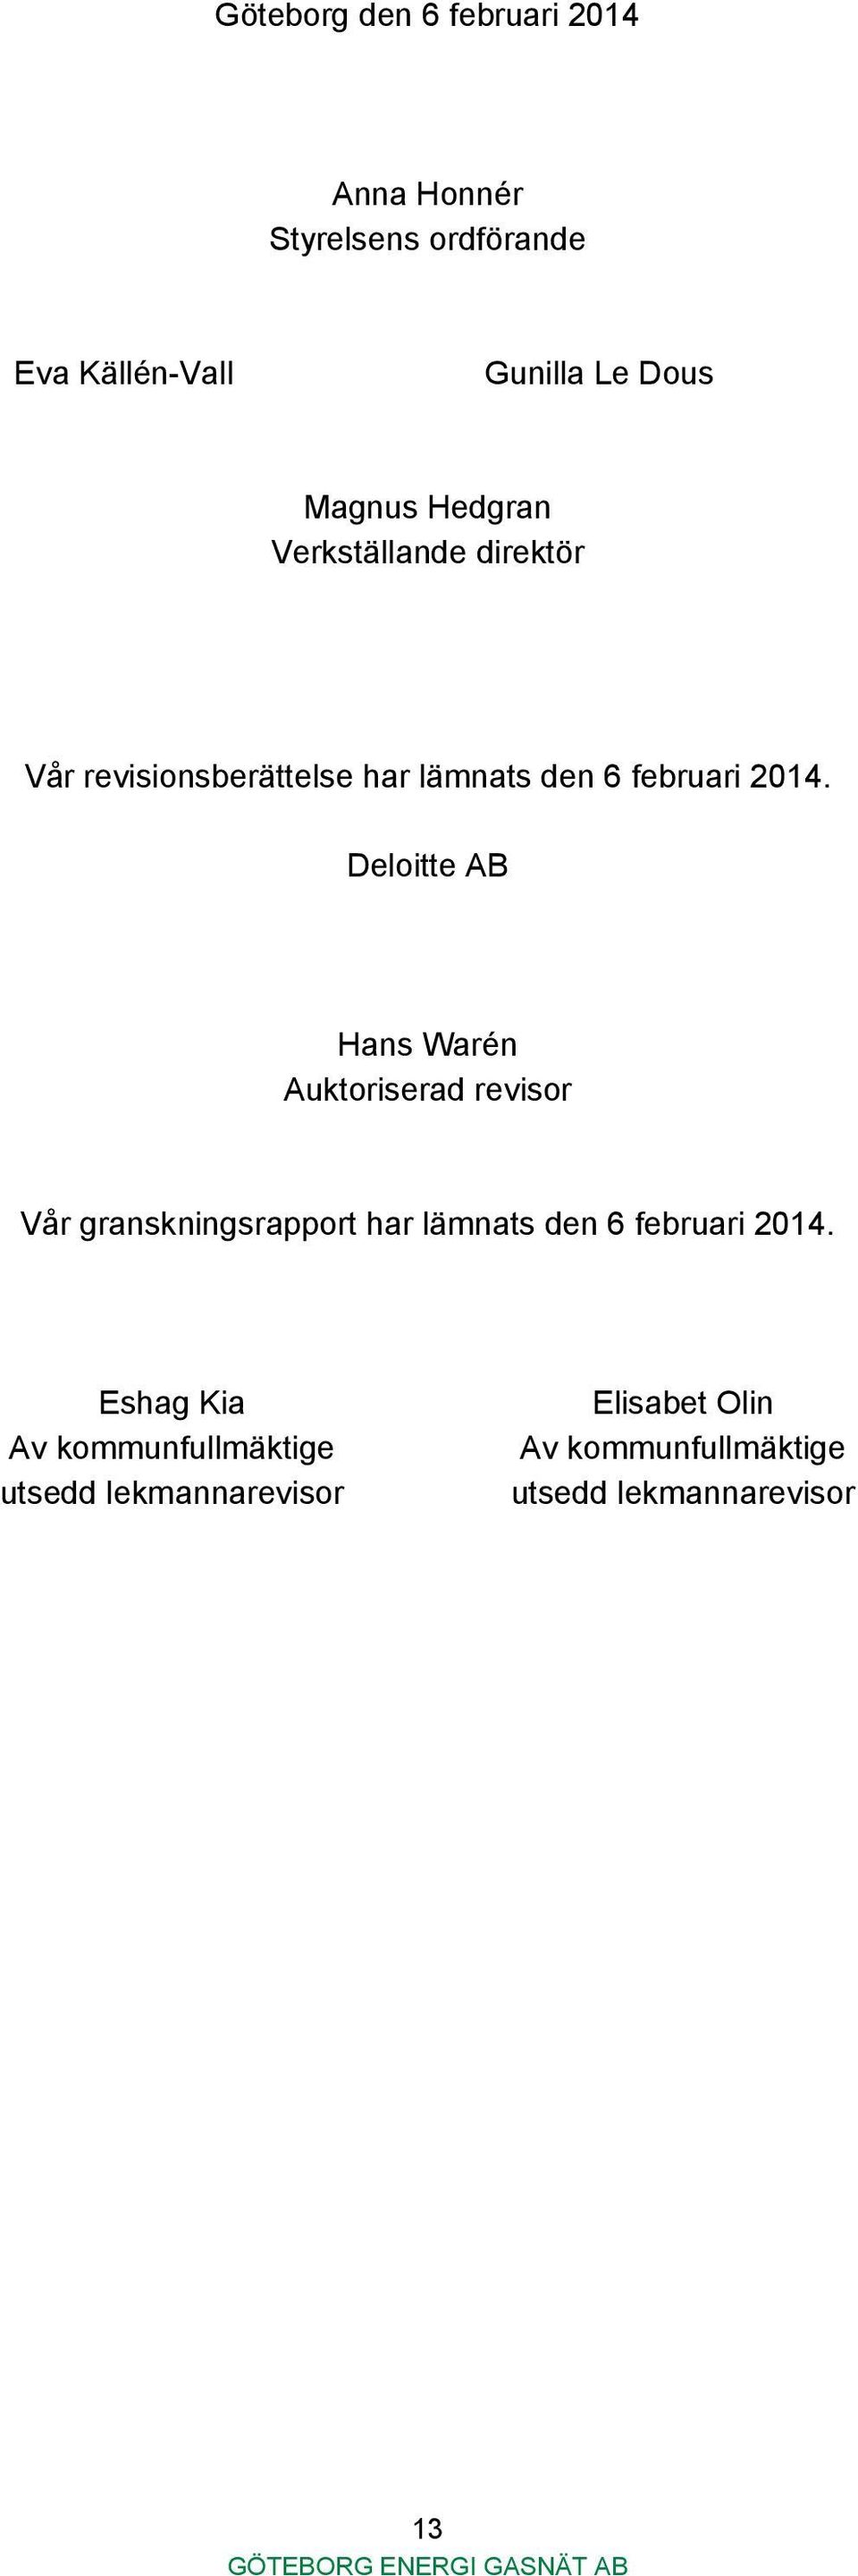 Deloitte AB Hans Warén Auktoriserad revisor Vår granskningsrapport har lämnats den 6 februari 2014.